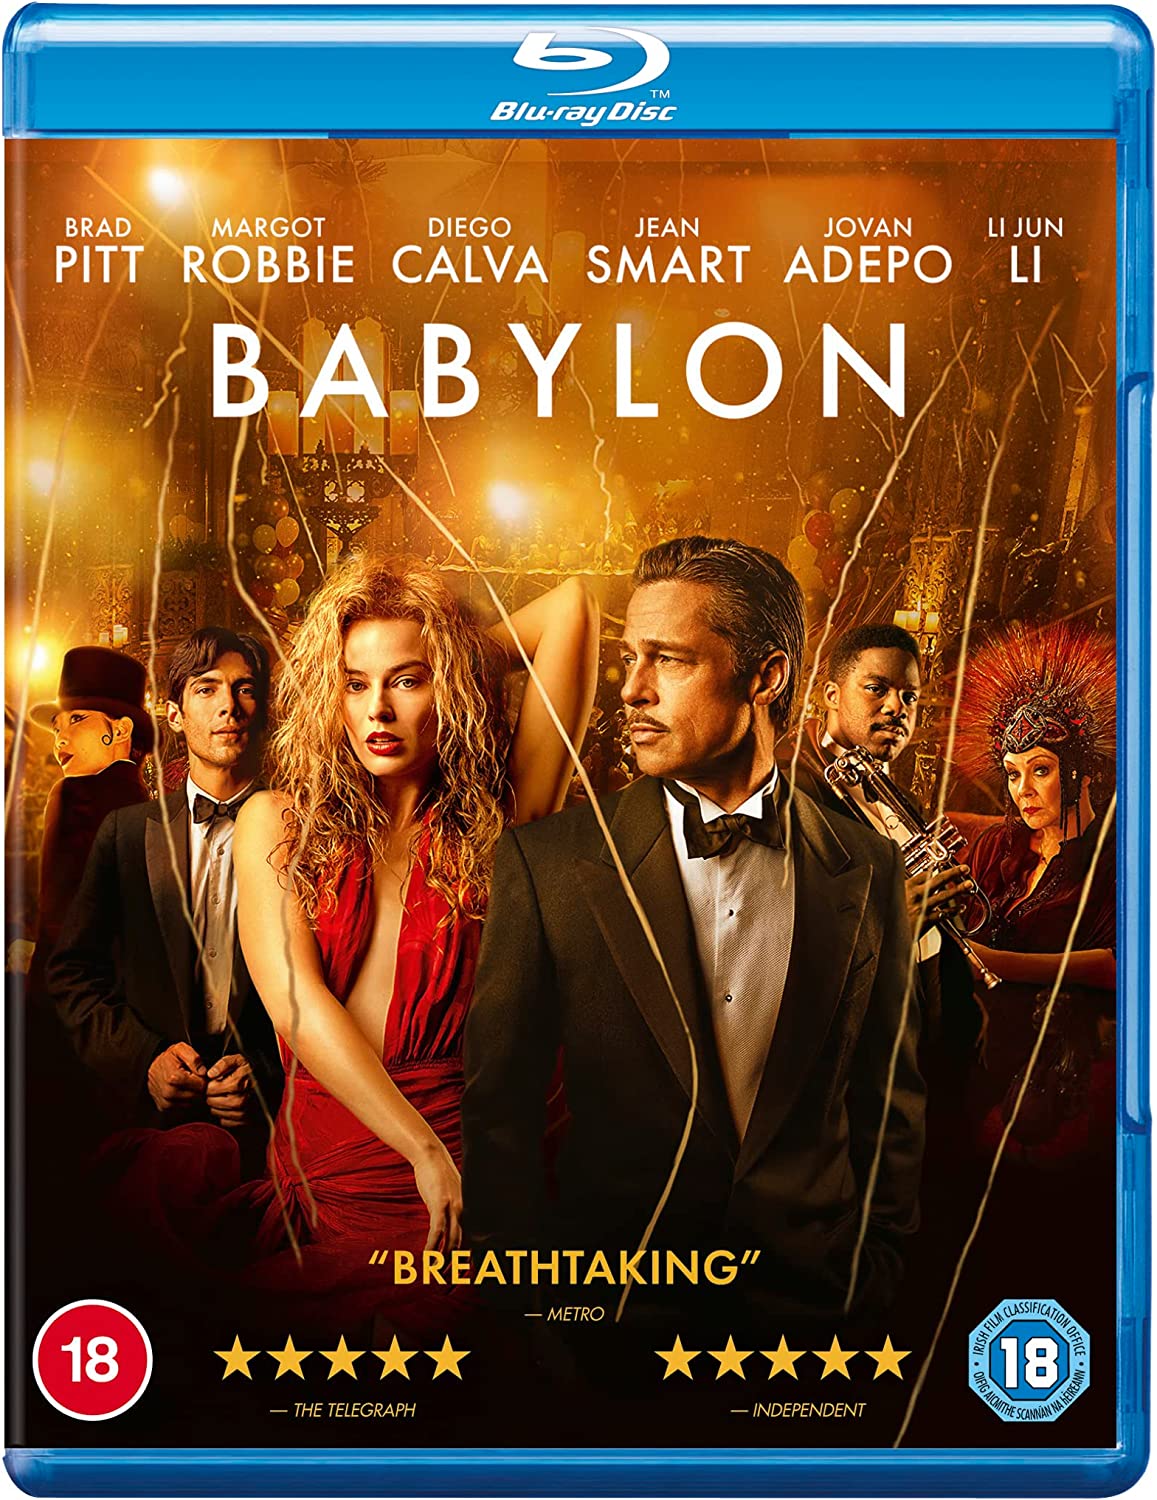 Babylon DVD